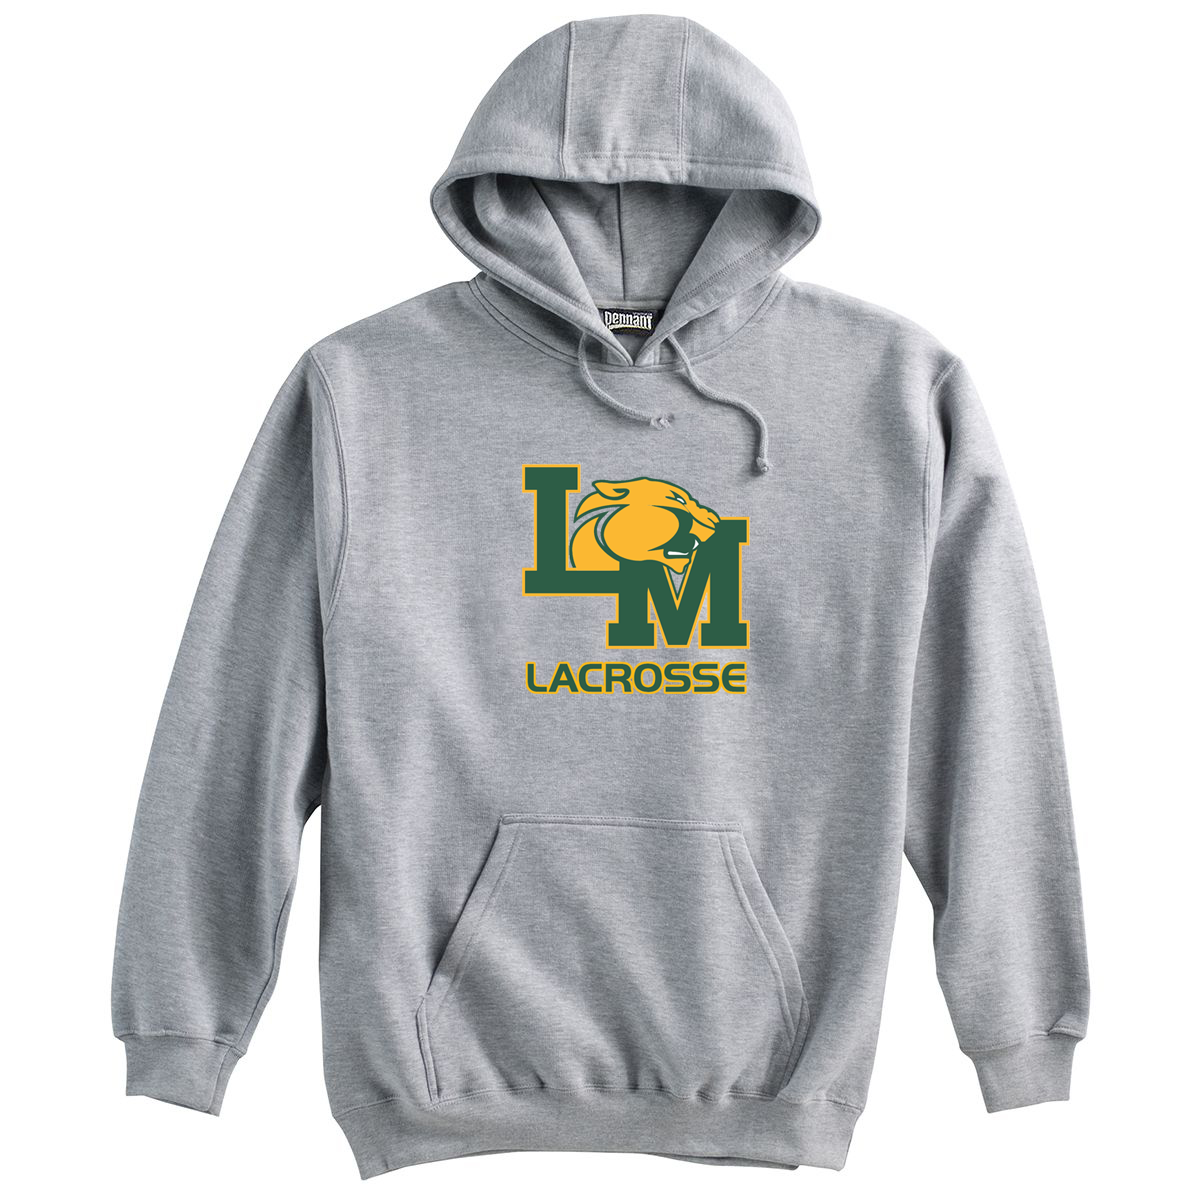 Little Miami Lacrosse Grey Sweatshirt